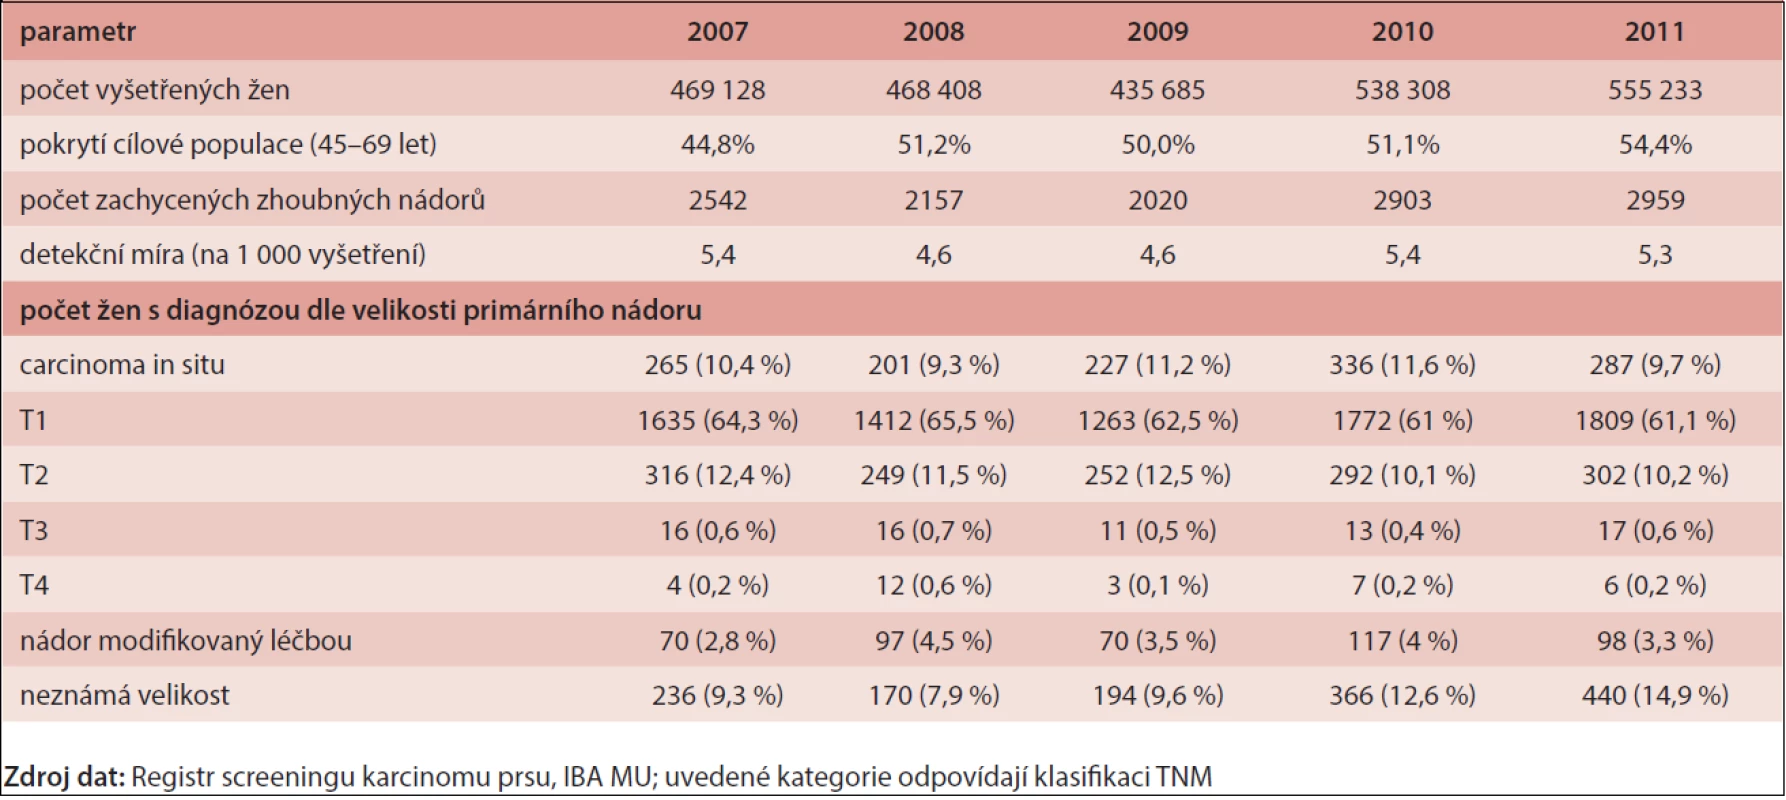 Základní výsledky programu screeningu karcinomu prsu v letech 2007–2011